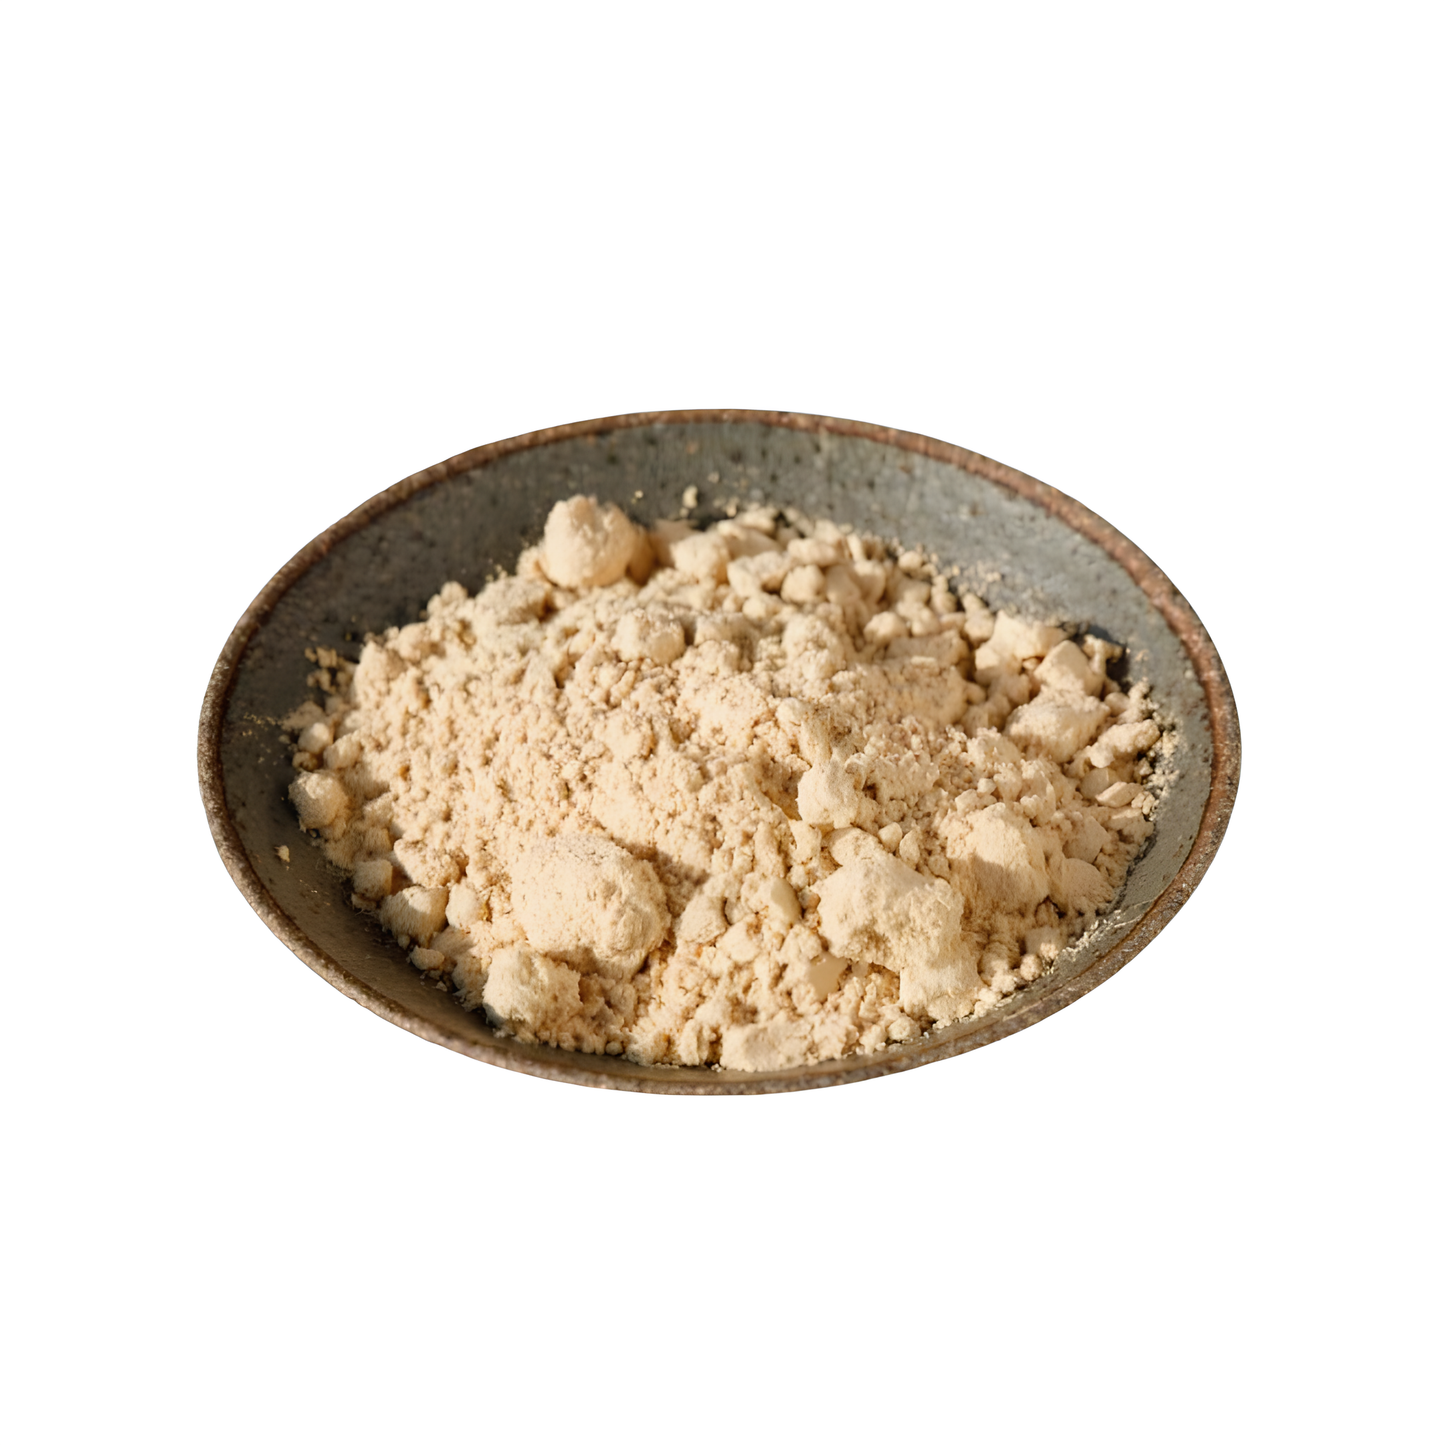 Roasted Soybean Powder (볶은 콩가루)